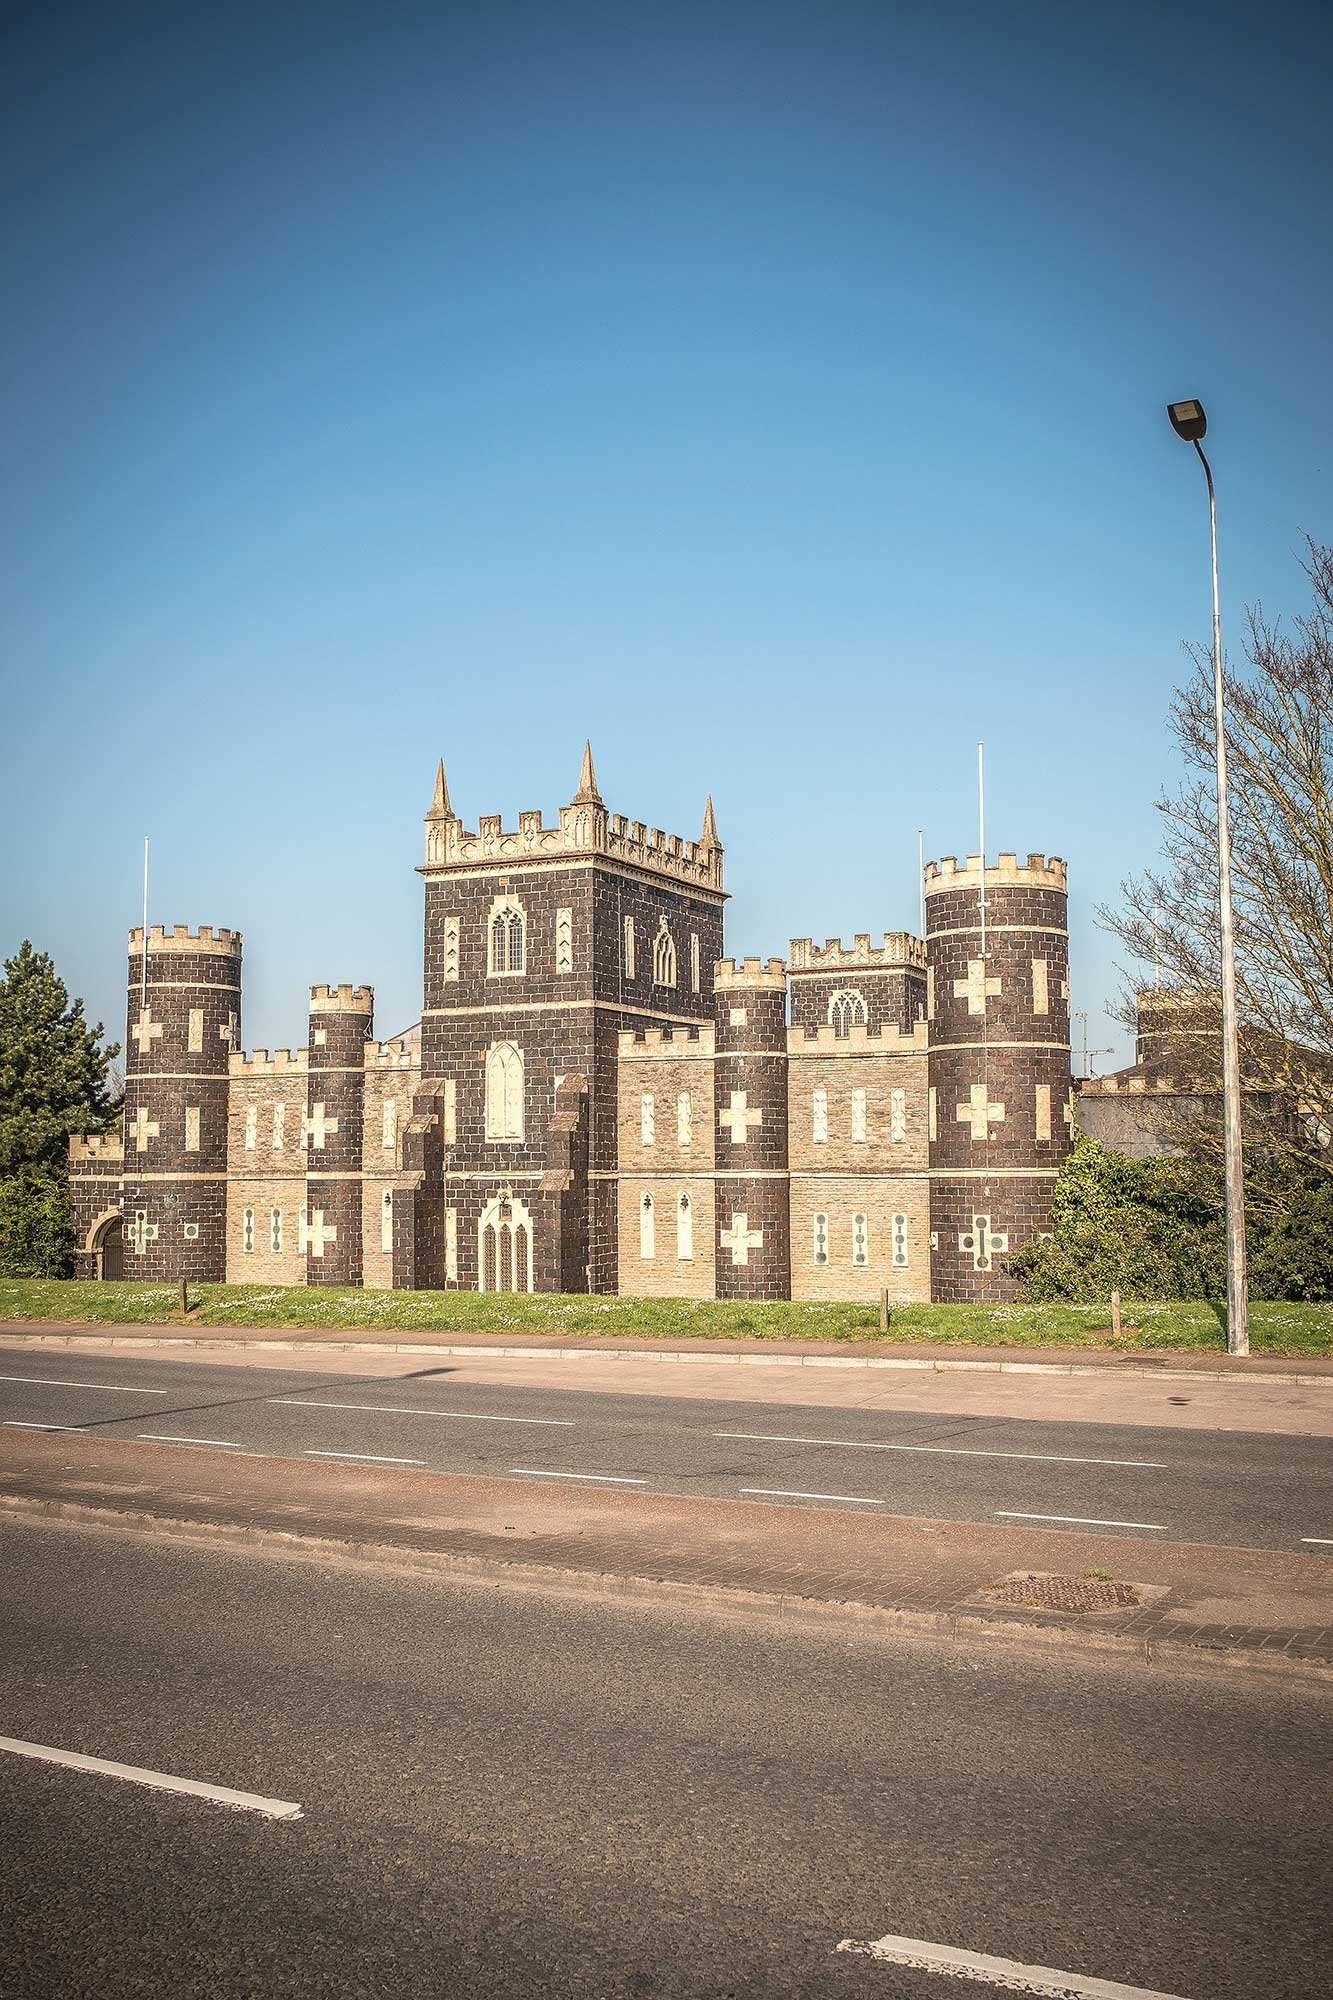 The Black Castle Public House